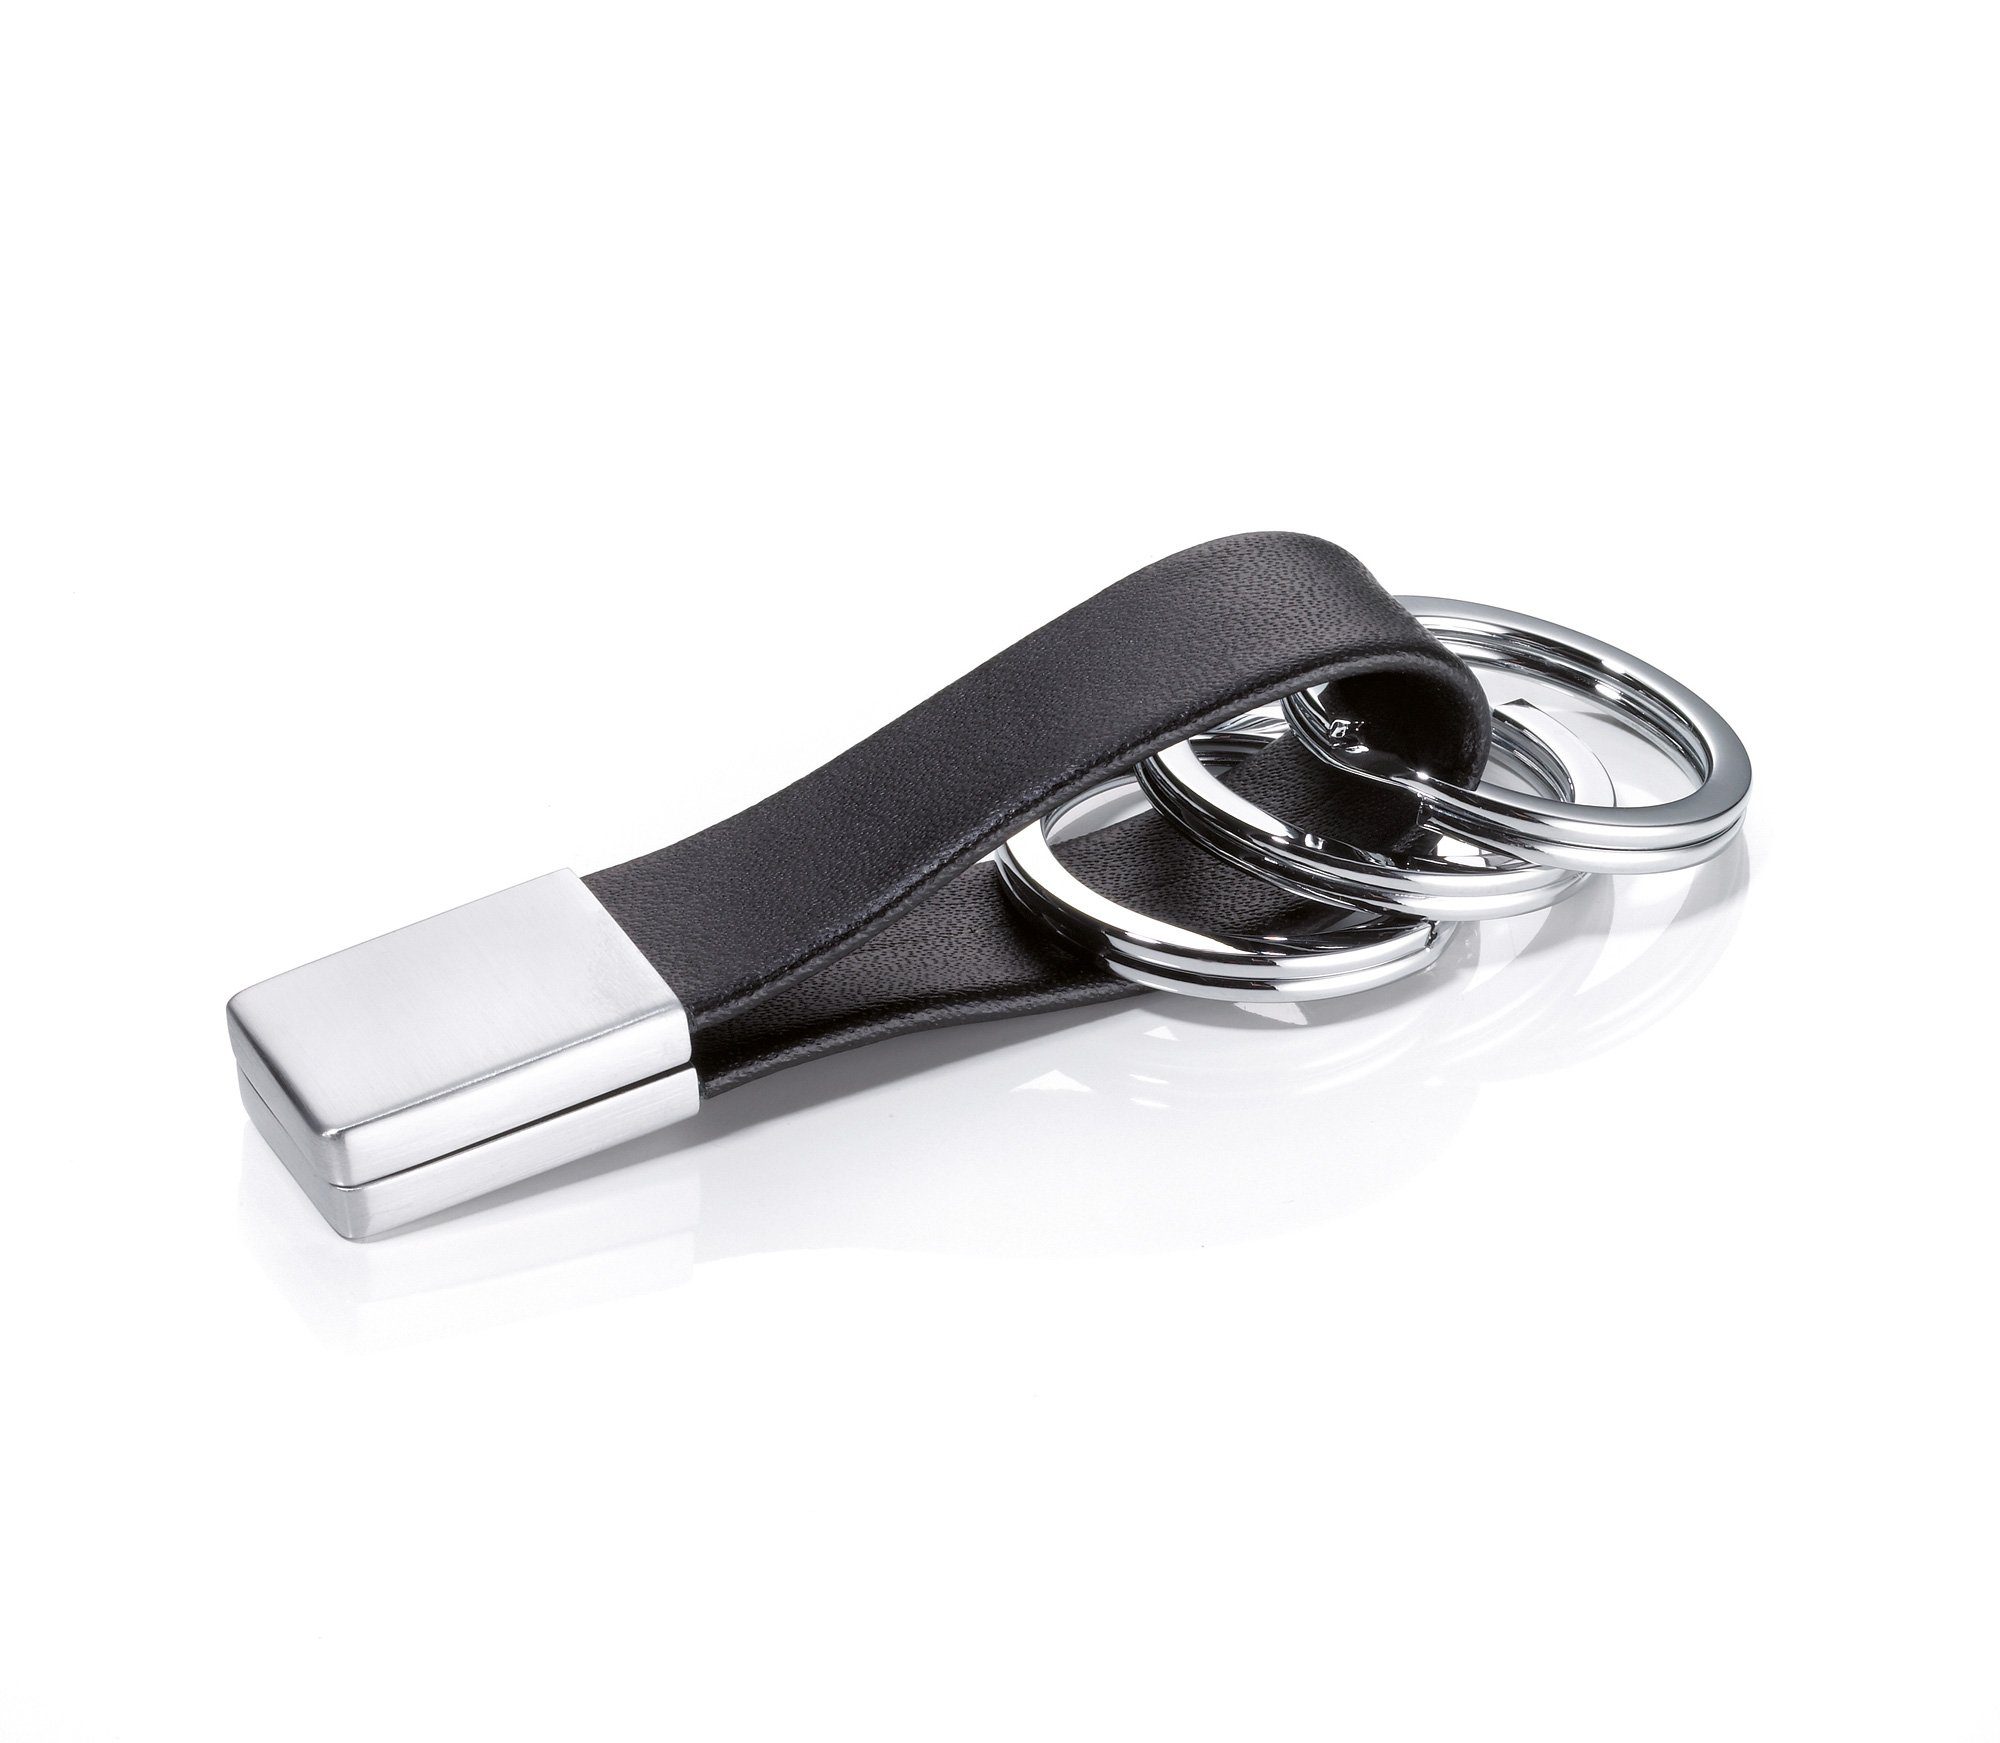 TROIKA Schlüsselanhänger TROIKA TWISTER SCHLÜSSELHALTER - KRG649/LE -  Lederschlaufe, braun - schwarzes Leder/Metall - Schlüsselanhänger mit 3  Schlüsselringen - praktischer Twist-Verschluss